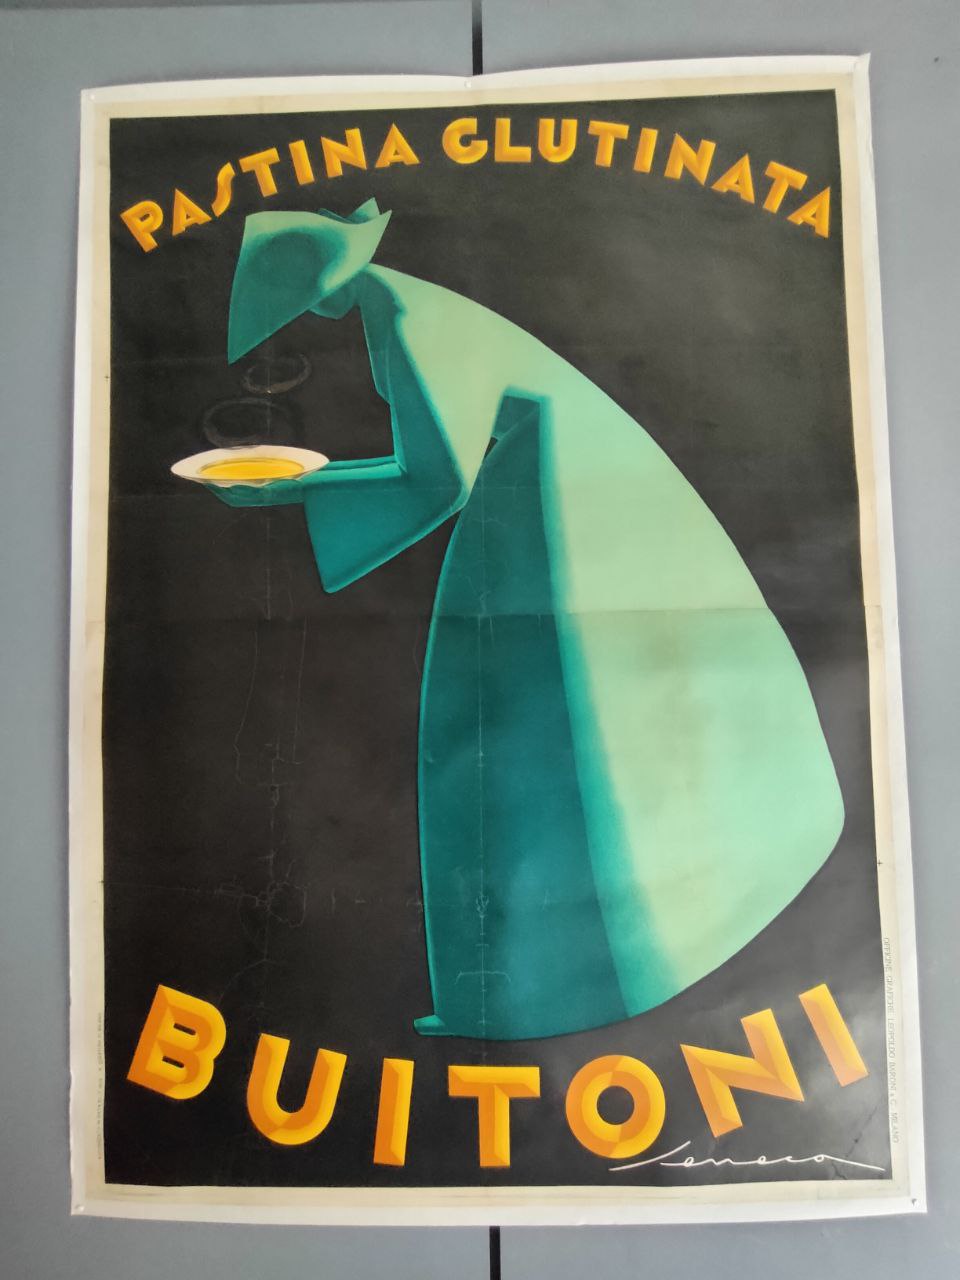 Manifesto originale pubblicitario - Buitoni Pasta Glutinata